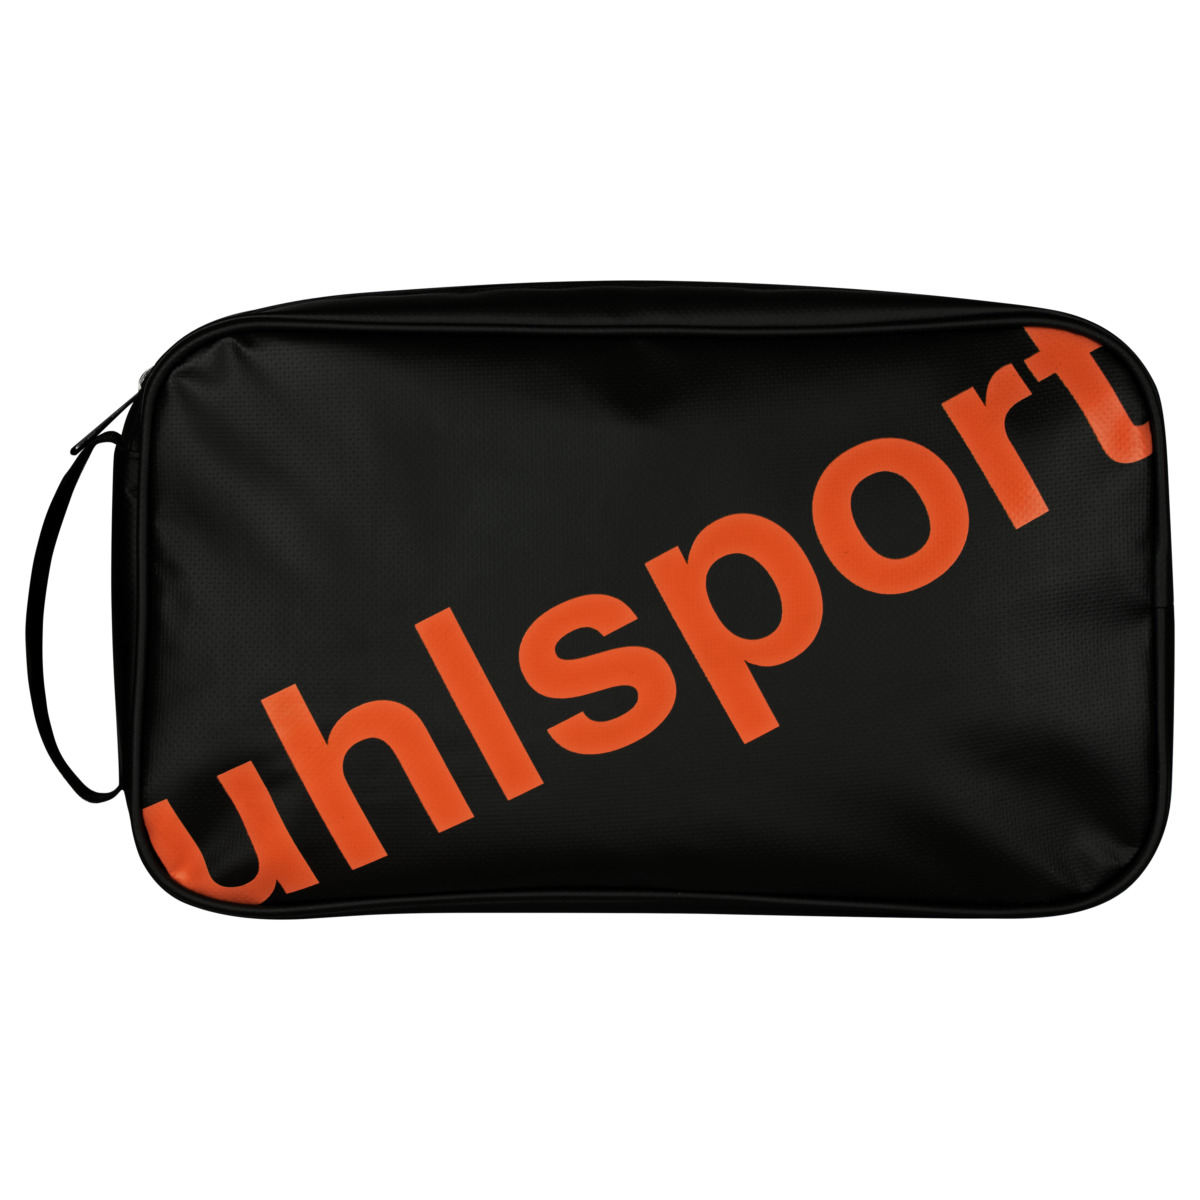 uhlsport Goalkeeper Glove Bag Black Edition Size One Size Black 